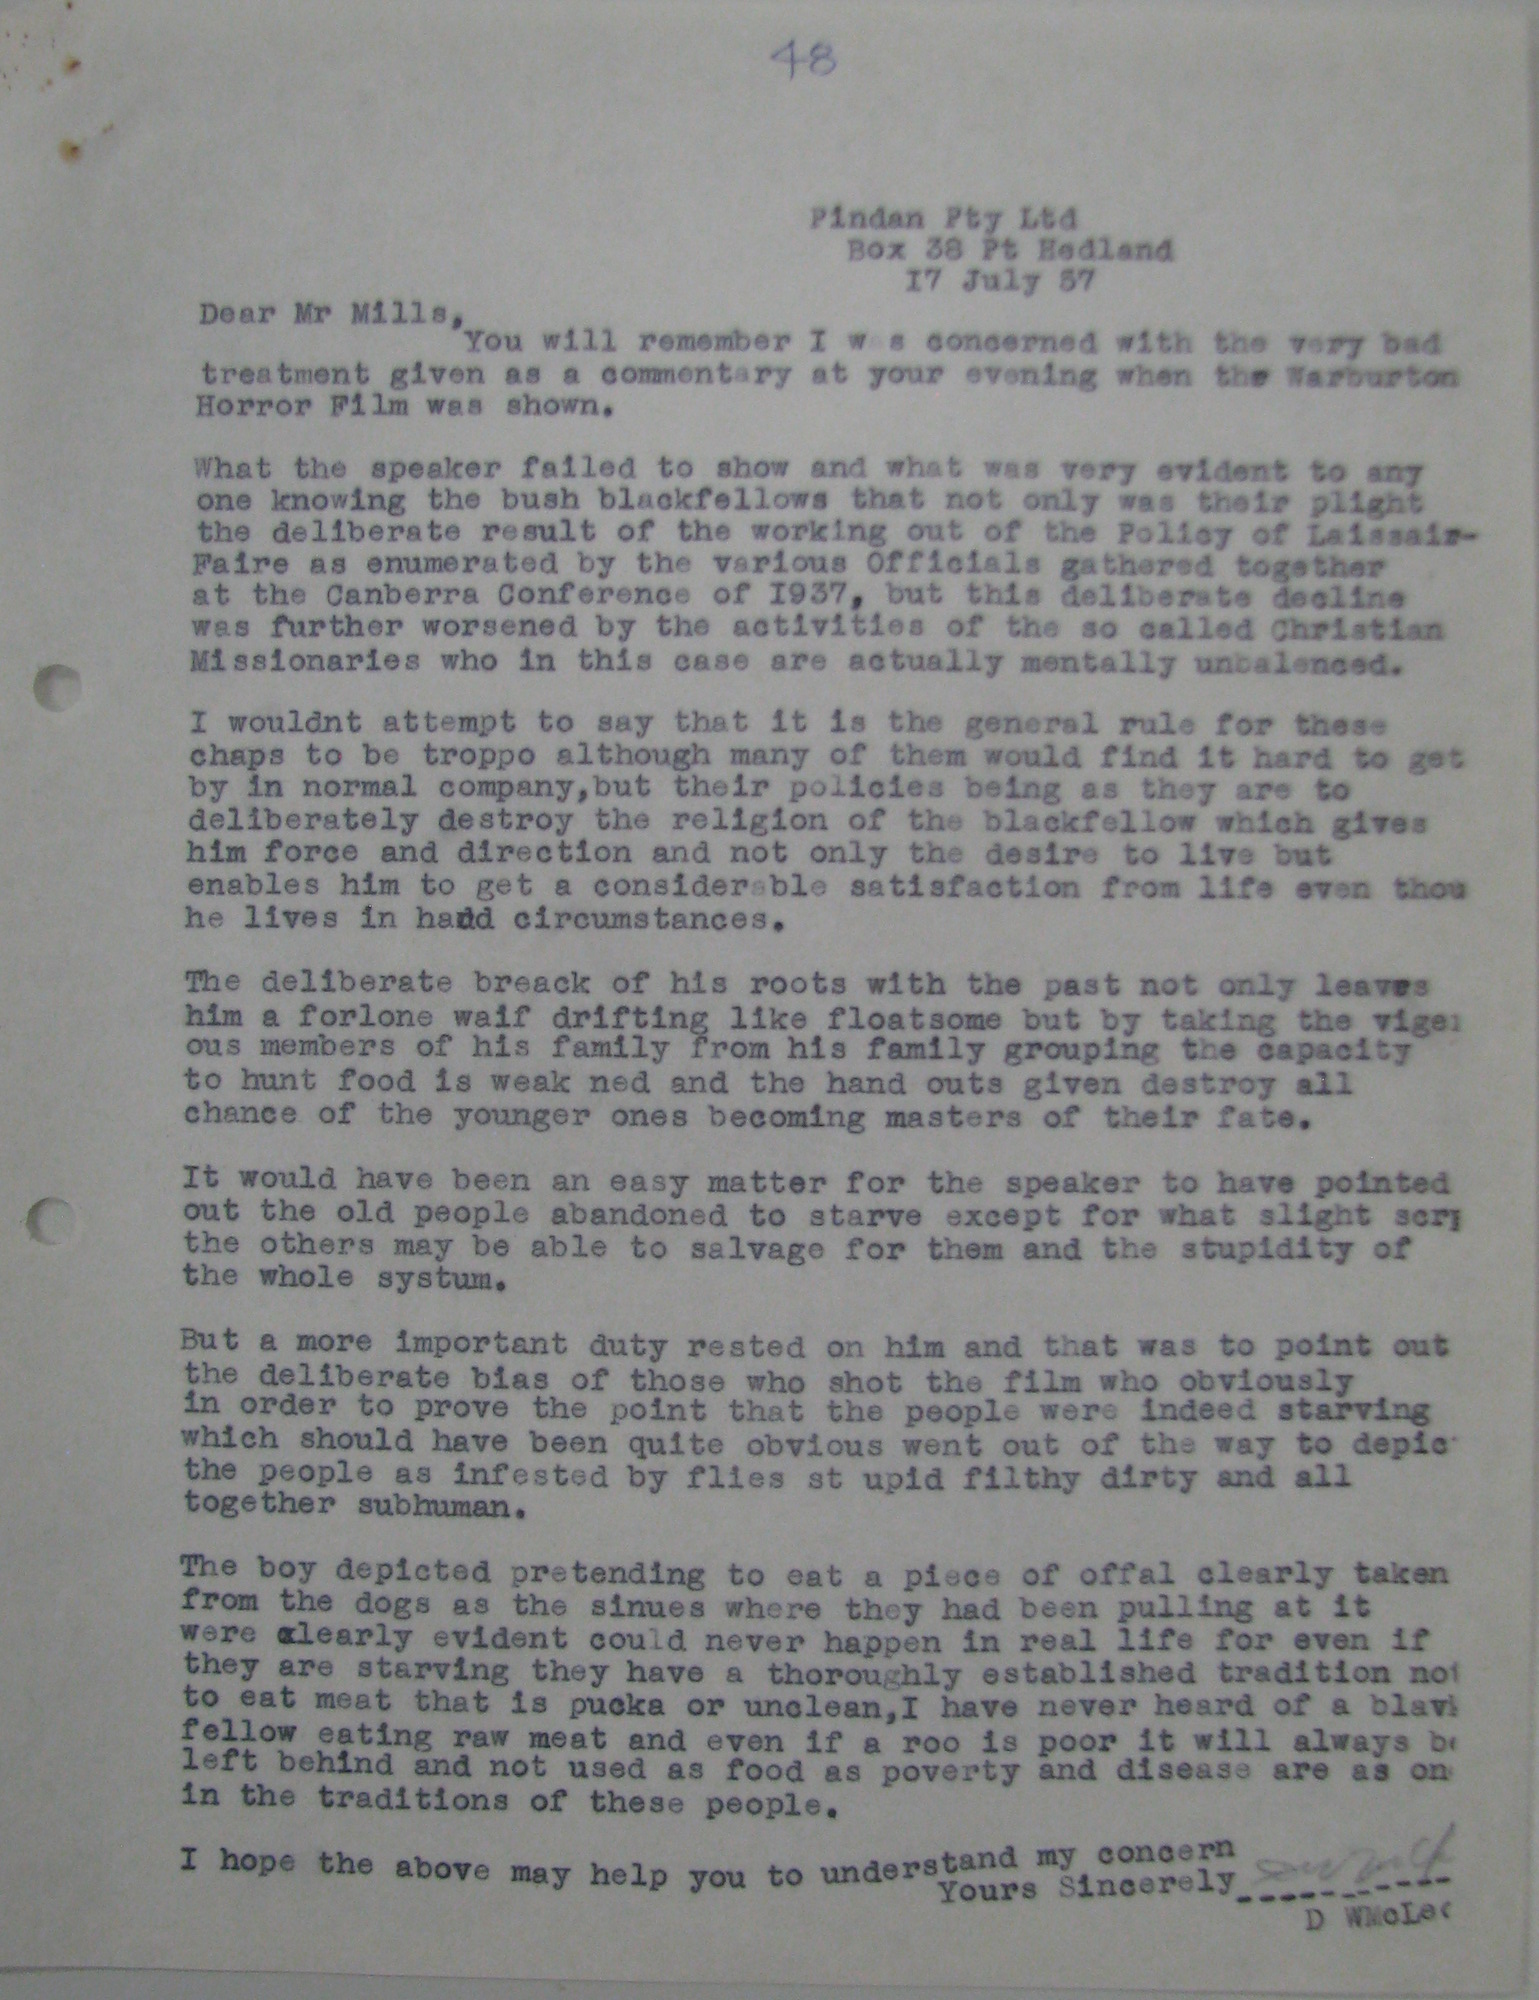 Don McLeod to John Mills [Millar], 17 July 1957